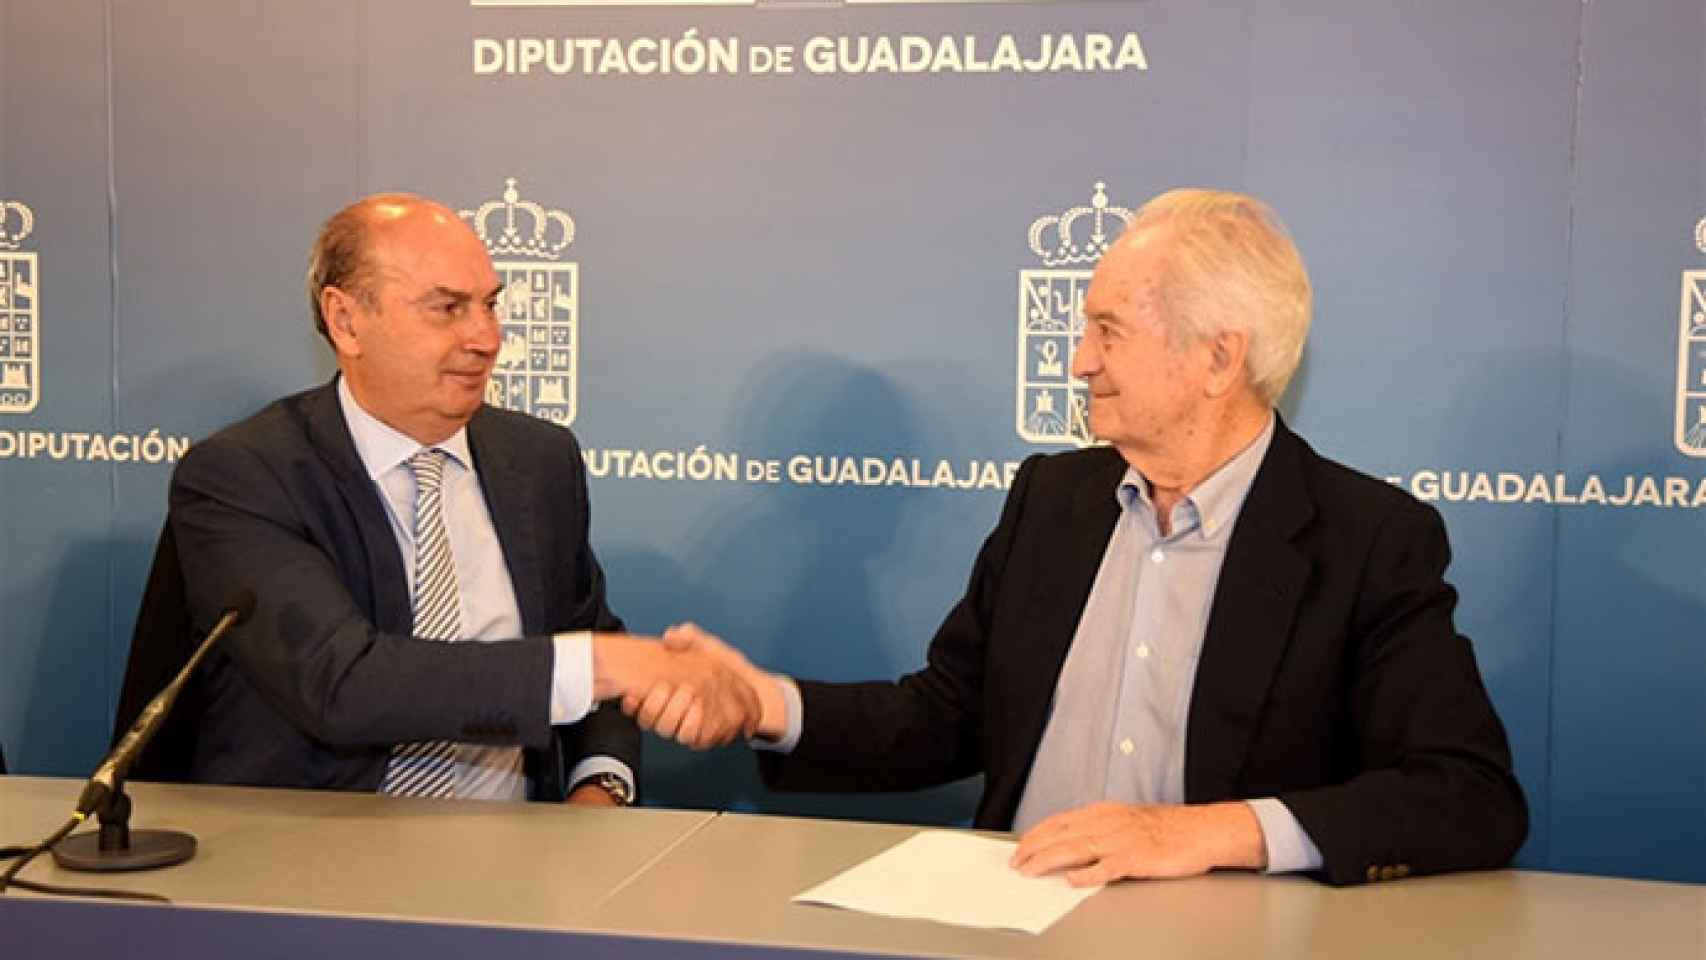 FOTO: Diputación de Guadalajara